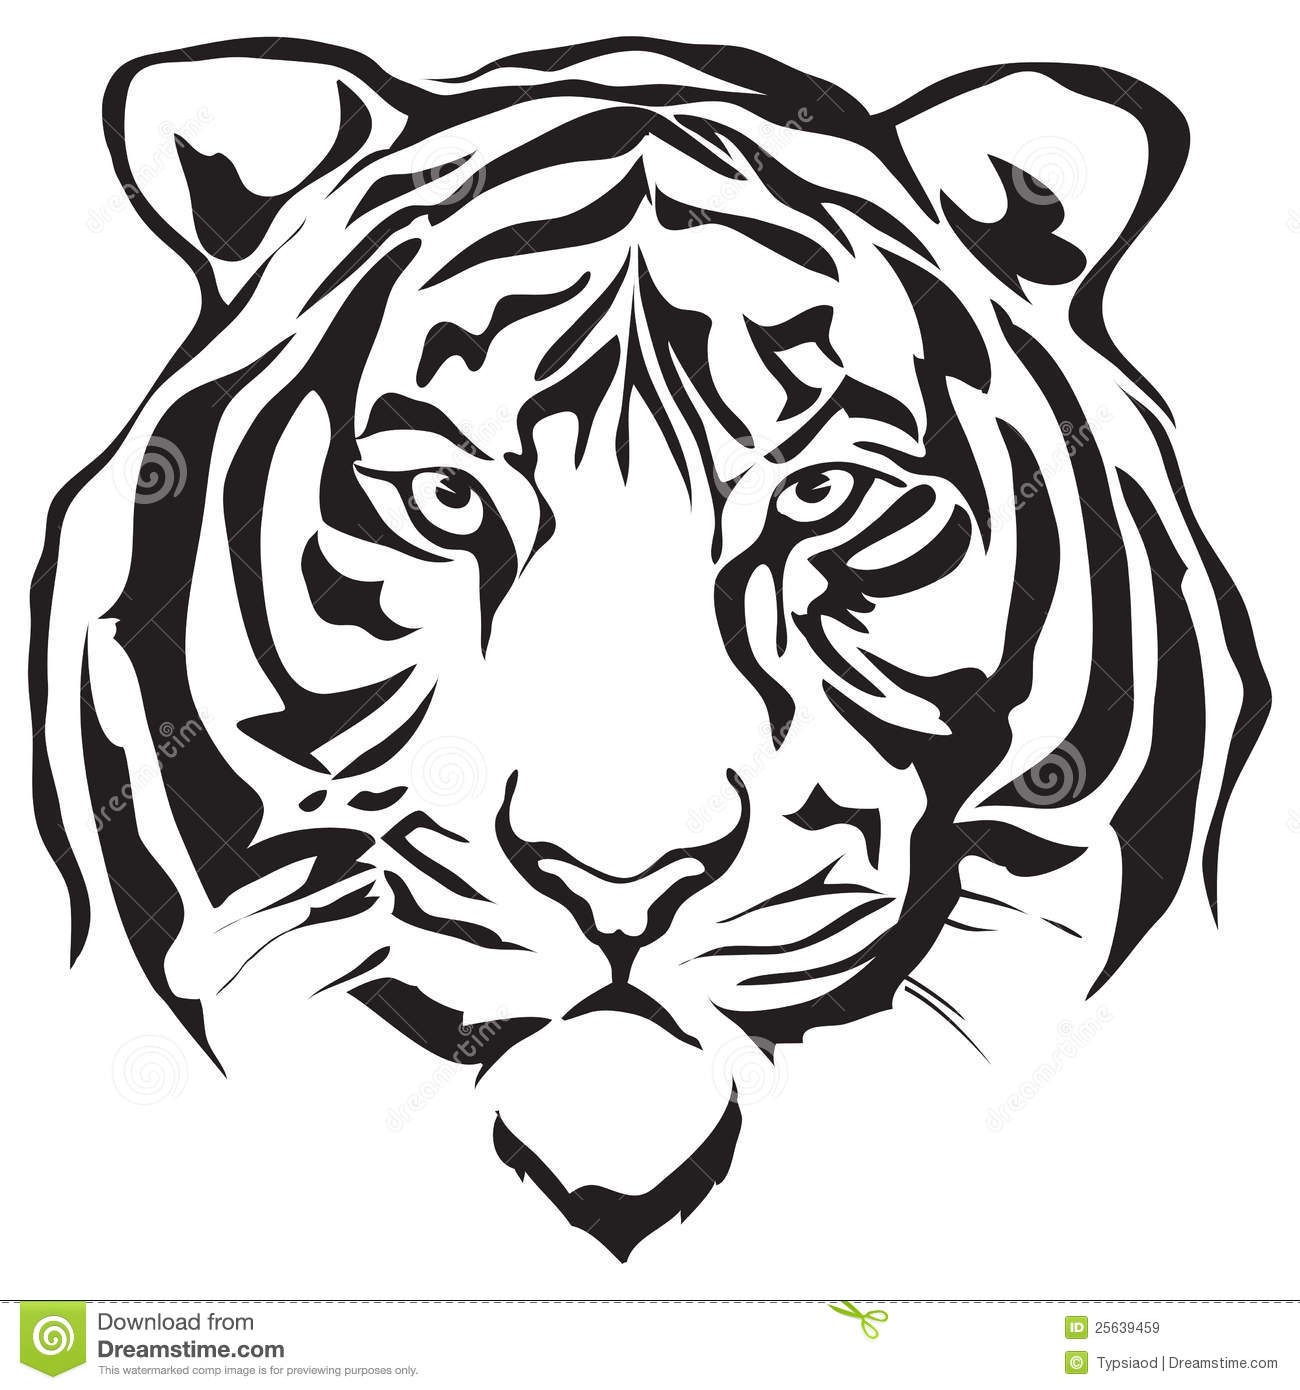 Tiger clipart black.